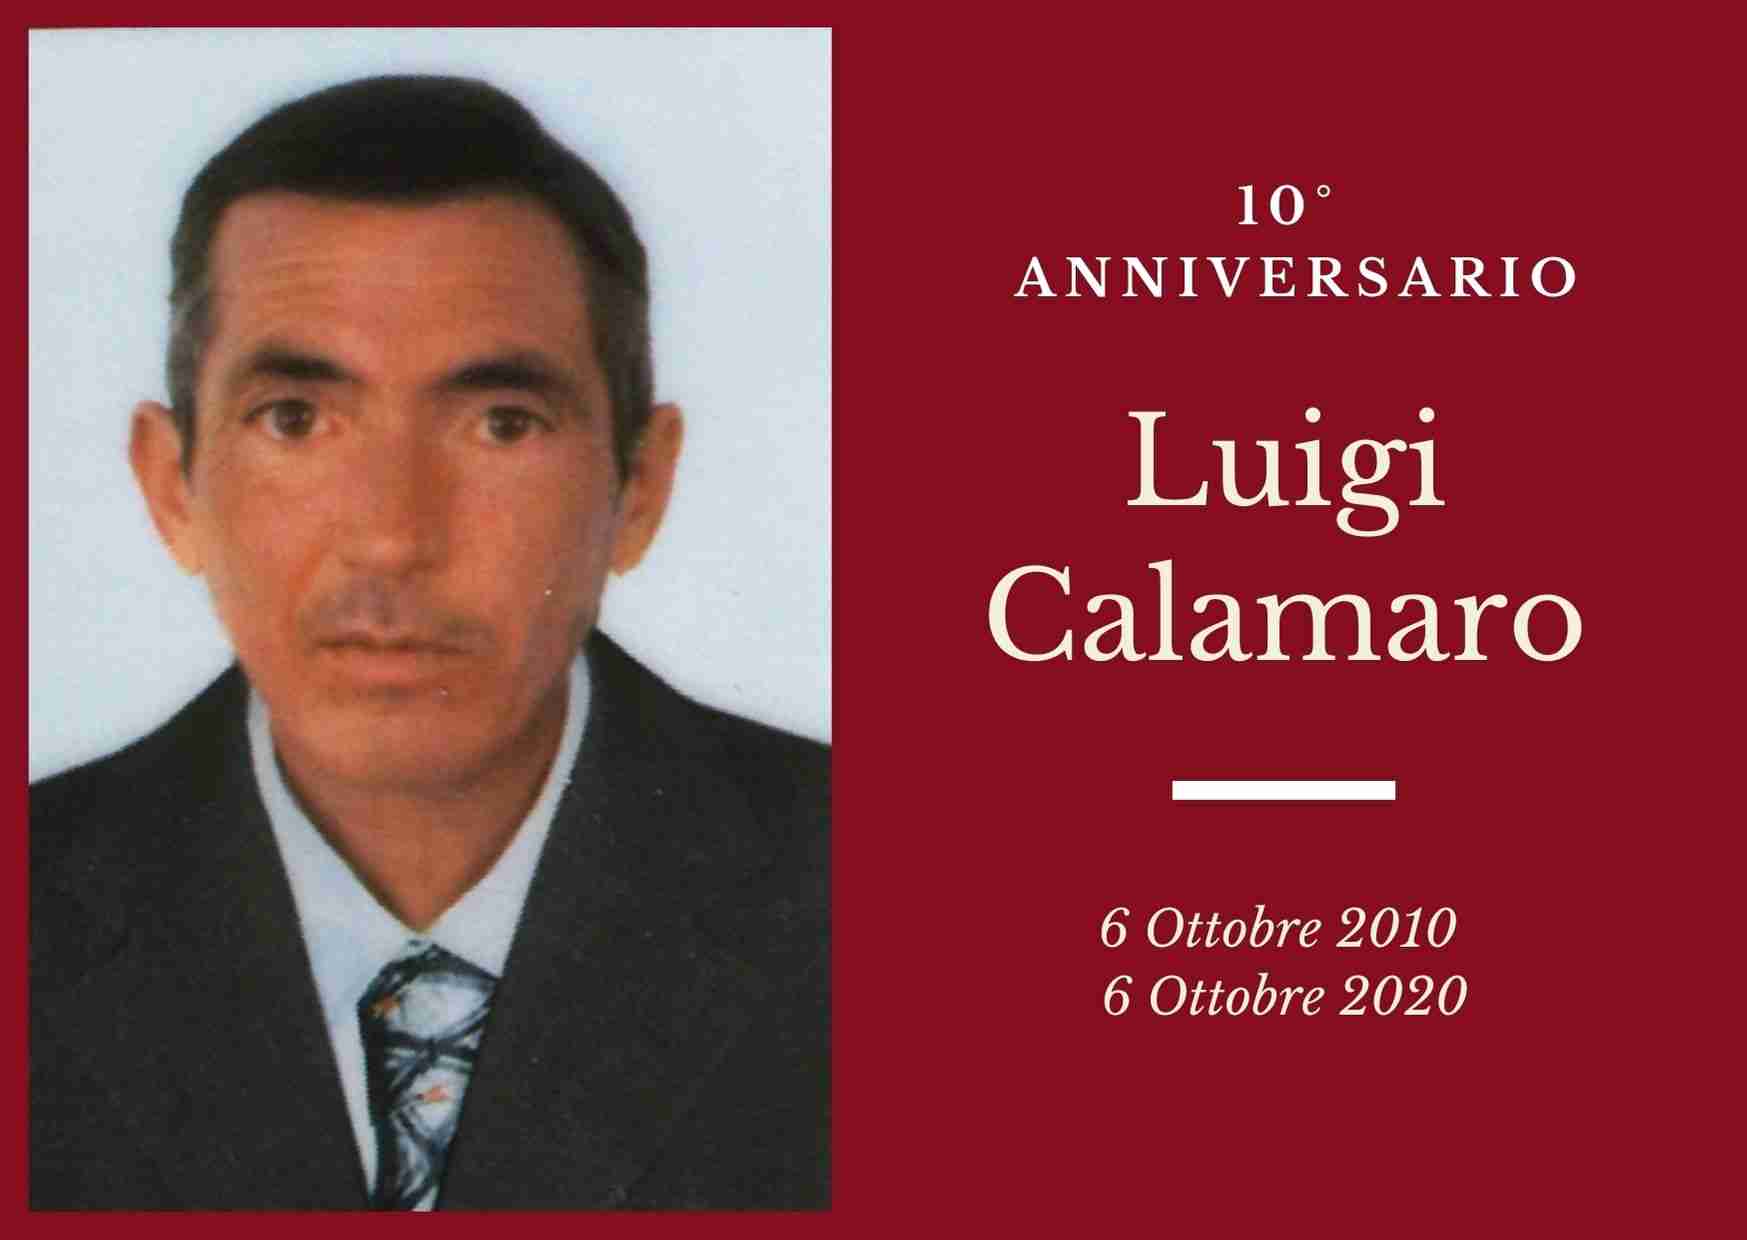 Necrologio: ricorre oggi il 10° Anniversario di Luigi Calamaro